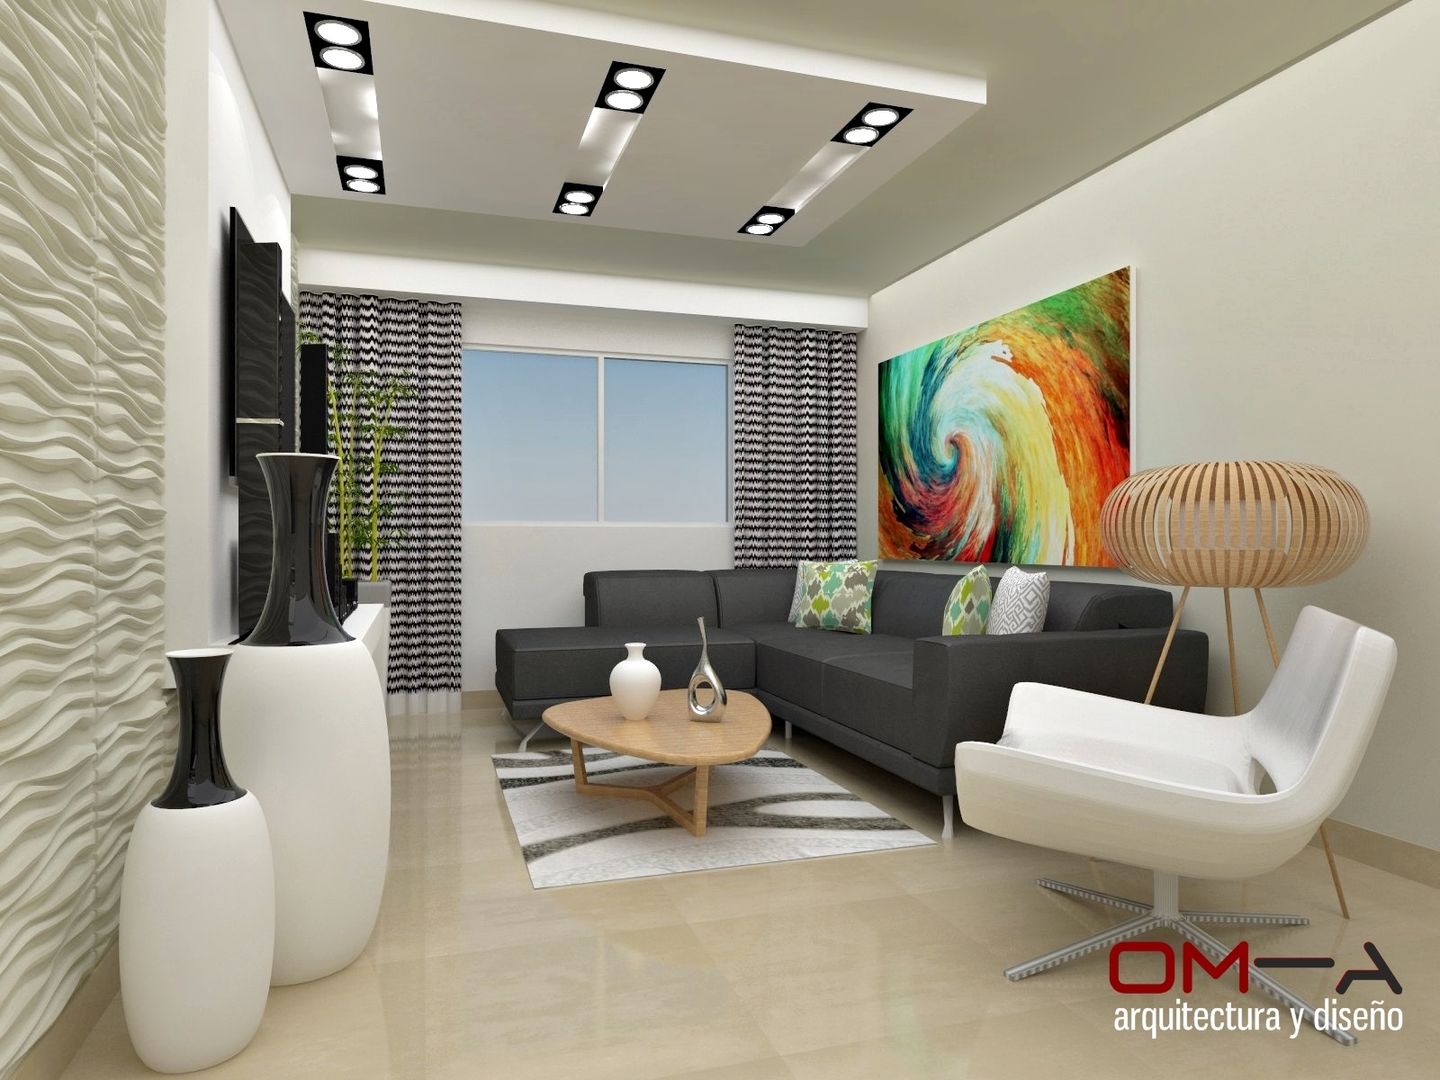 Diseño interior en apartamento , om-a arquitectura y diseño om-a arquitectura y diseño Living room